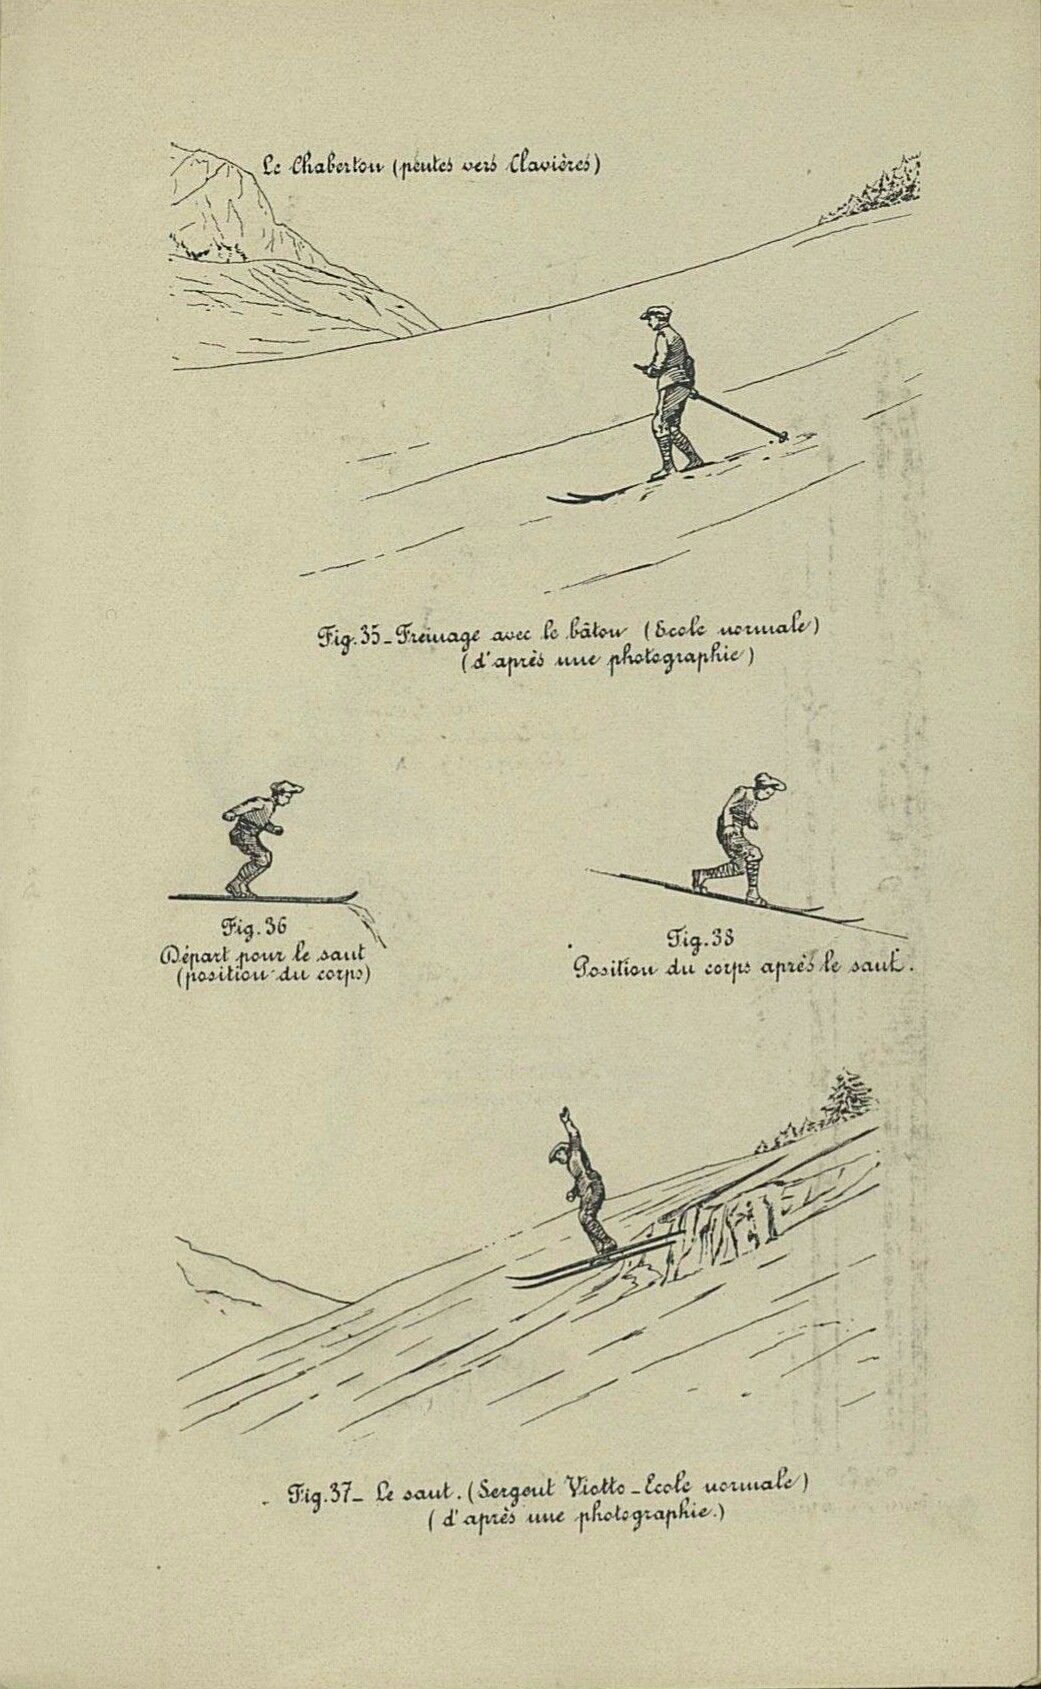 Fig35: Remmen met een skistok Fig 36: Positie voor een sprong Fig 38: Landingsposittie Fig 37: De sprong, volgens de 'oude school'